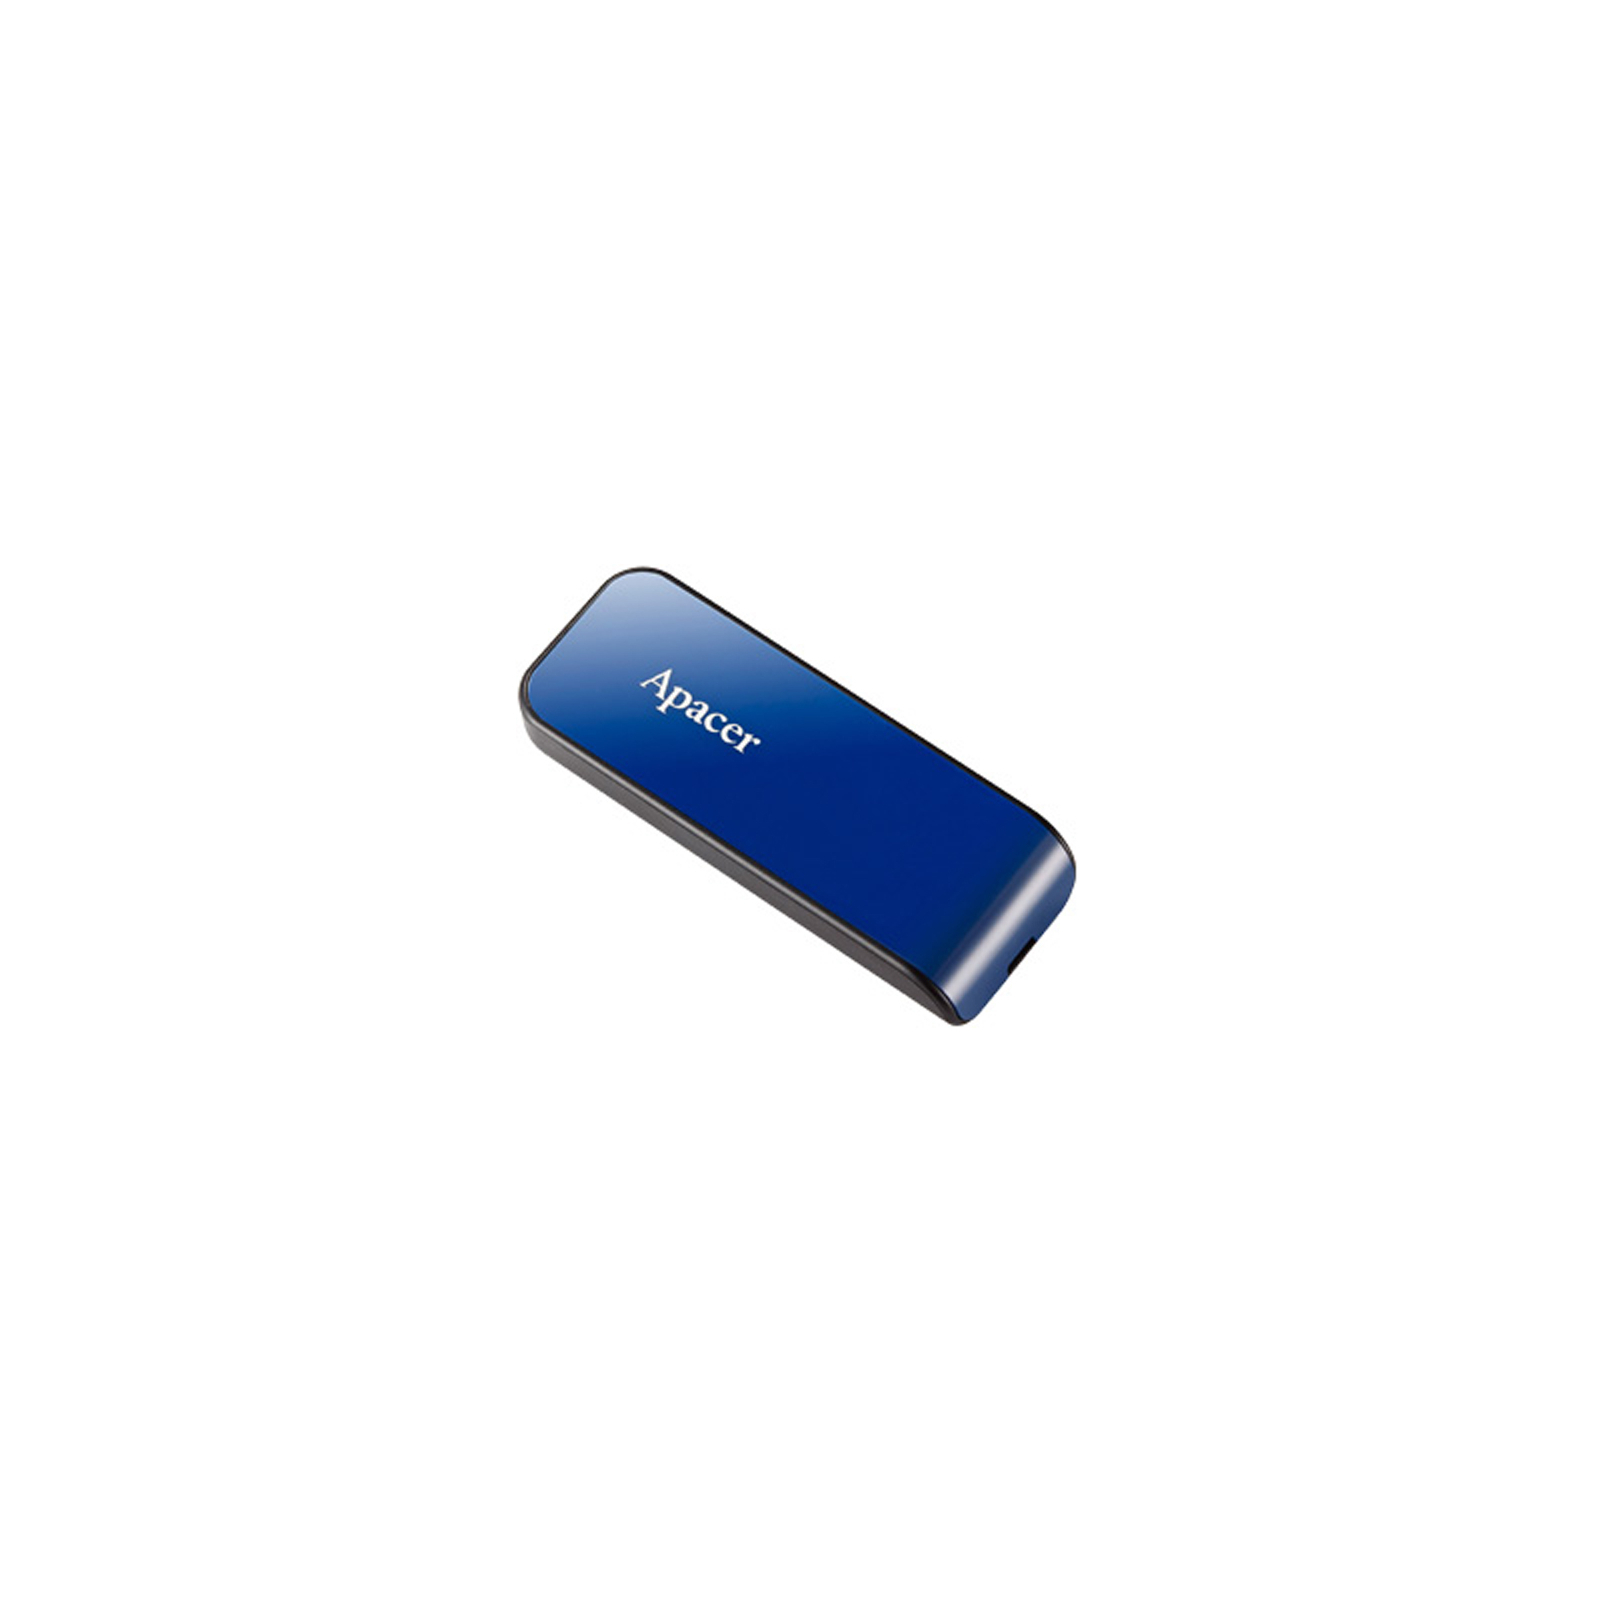 USB флеш накопичувач Apacer 64GB AH334 pink USB 2.0 (AP64GAH334P-1) зображення 2